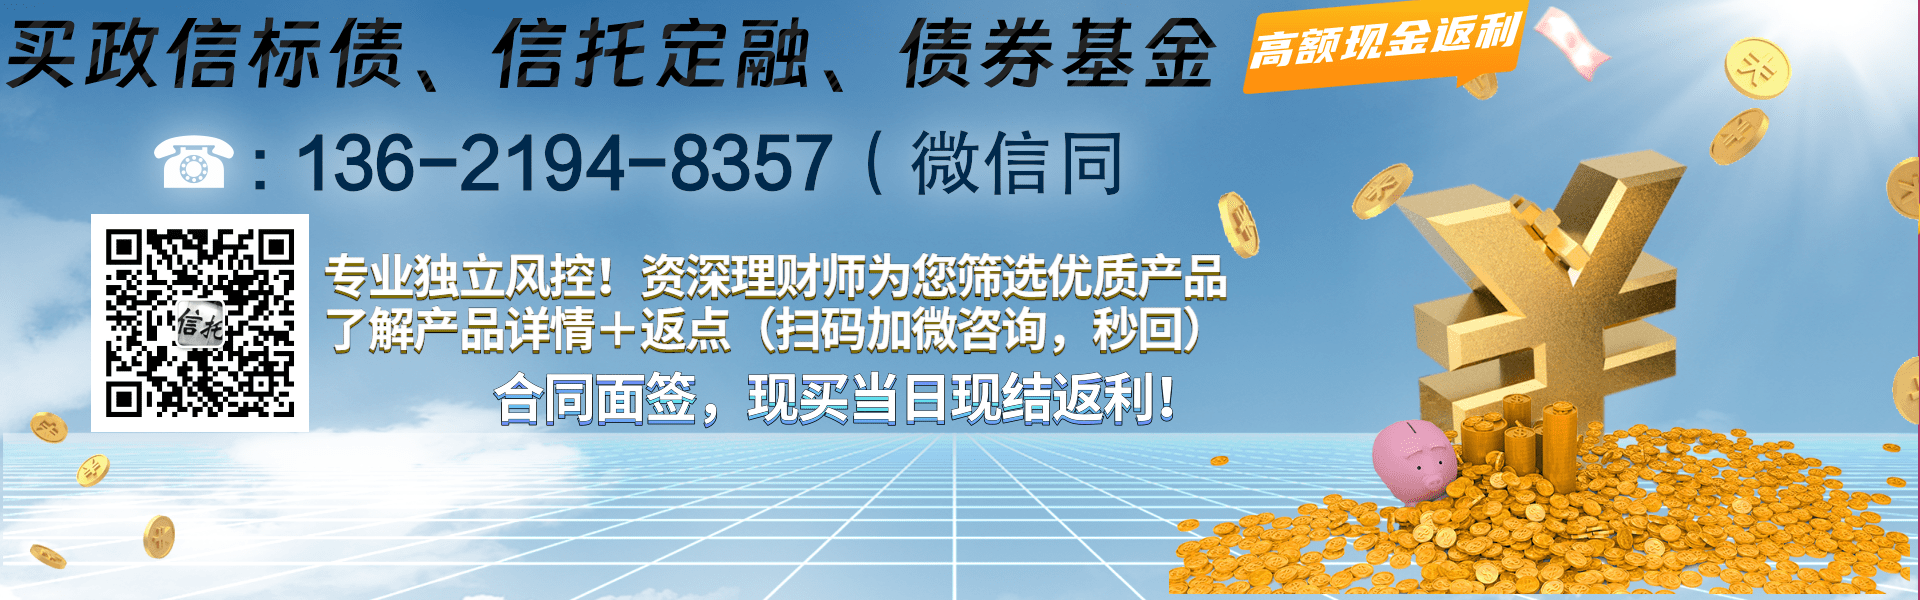 XX管理人-重庆17个月公募城投债券